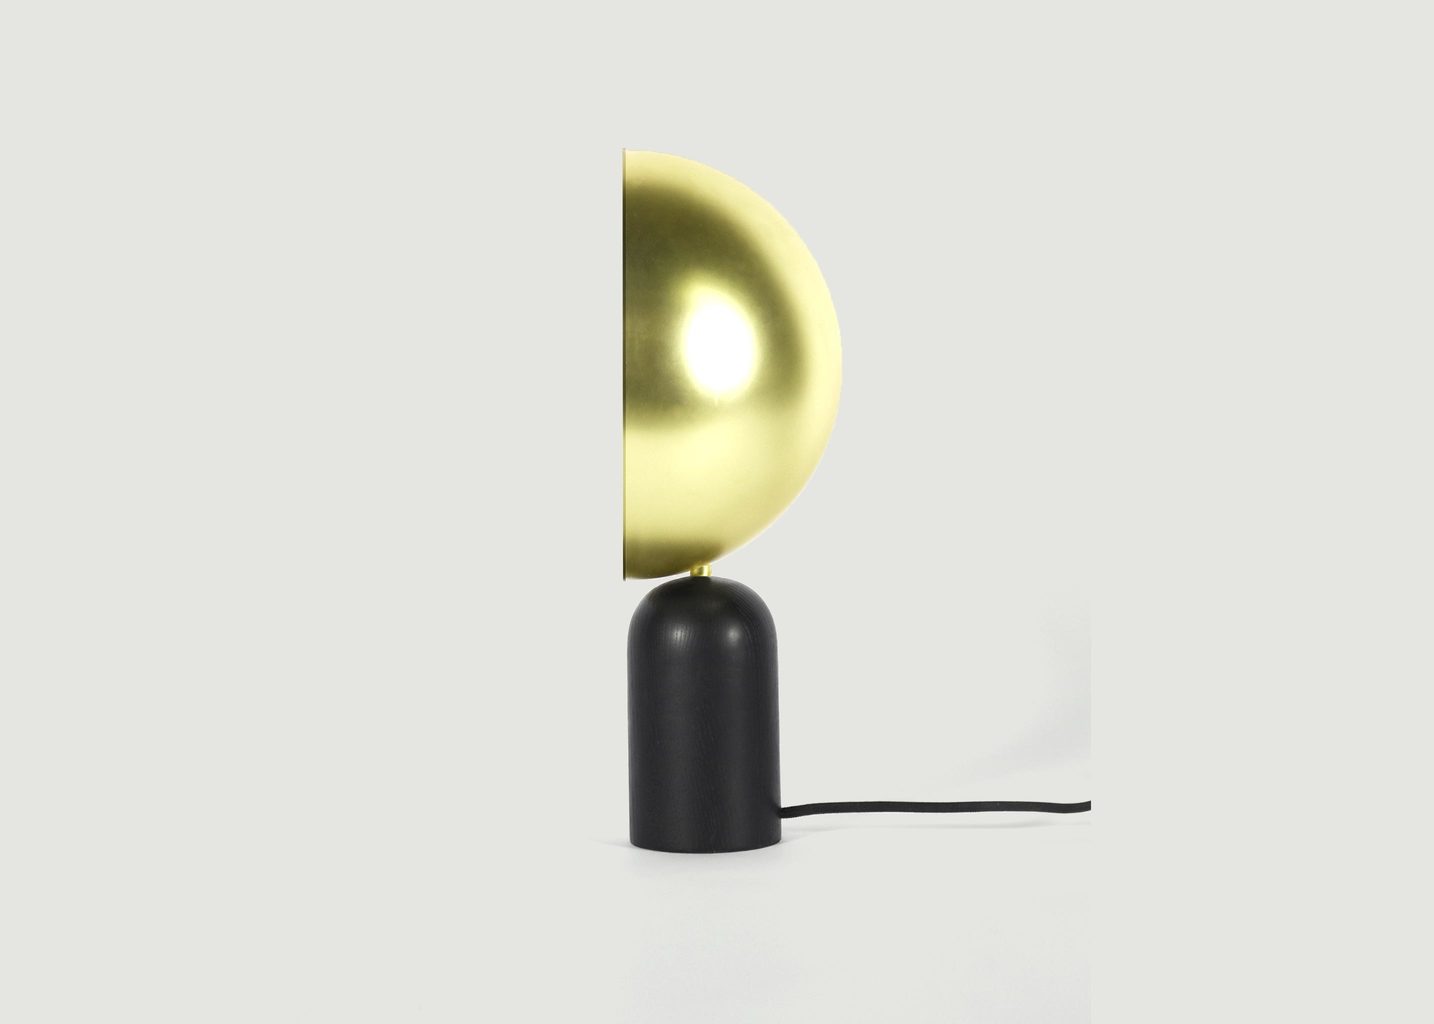 Lampe Atlas - Eno Studio